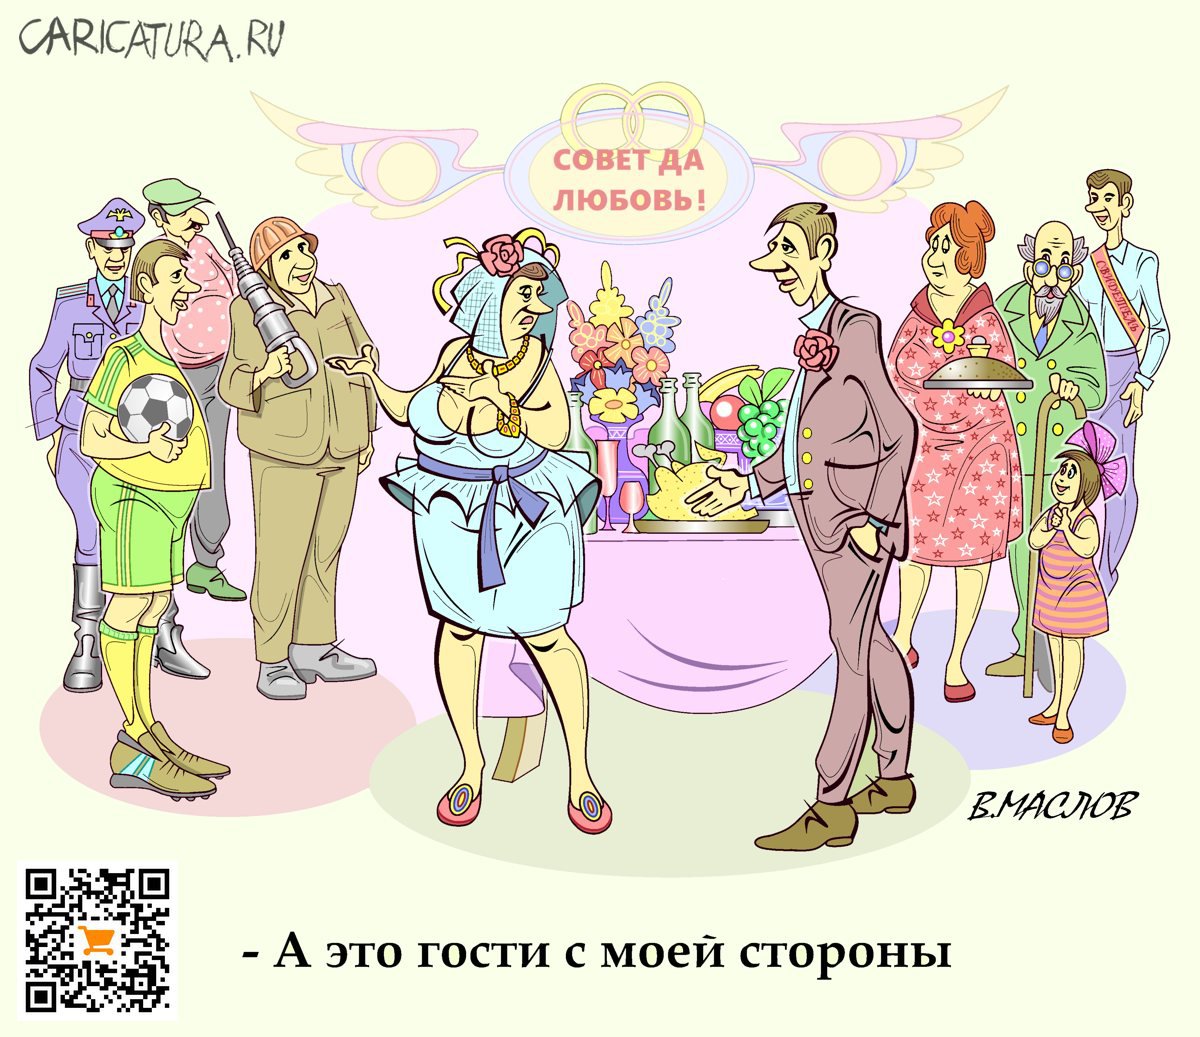 Карикатура "Ах, эта свадьба, свадьба...", Виталий Маслов